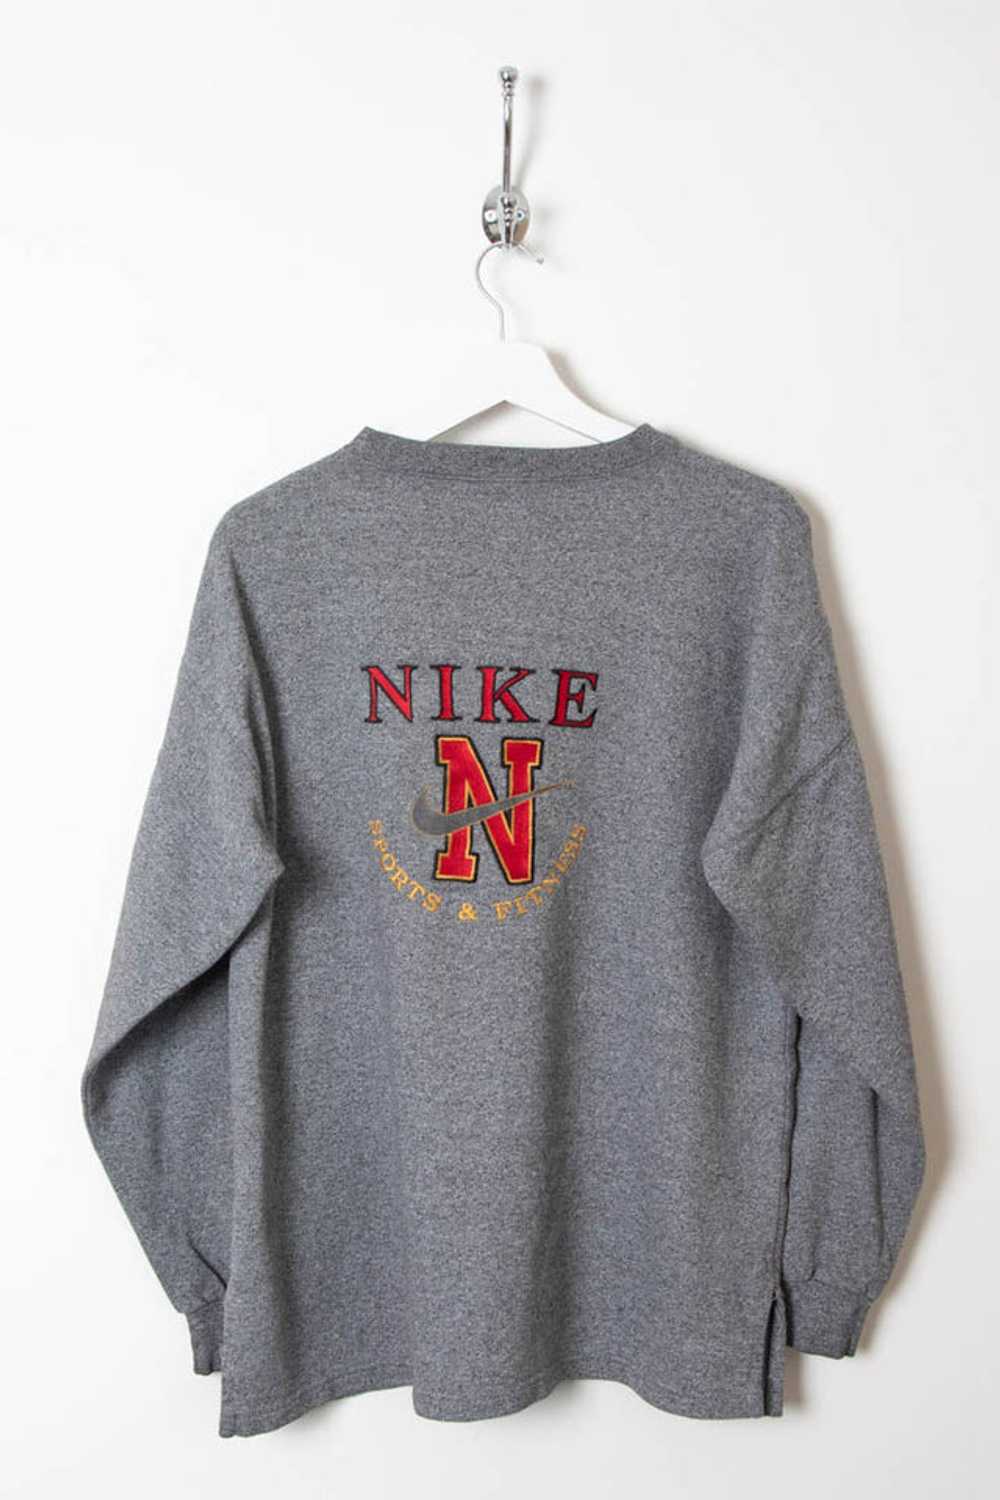 Nike Sweatshirt (S) - image 2